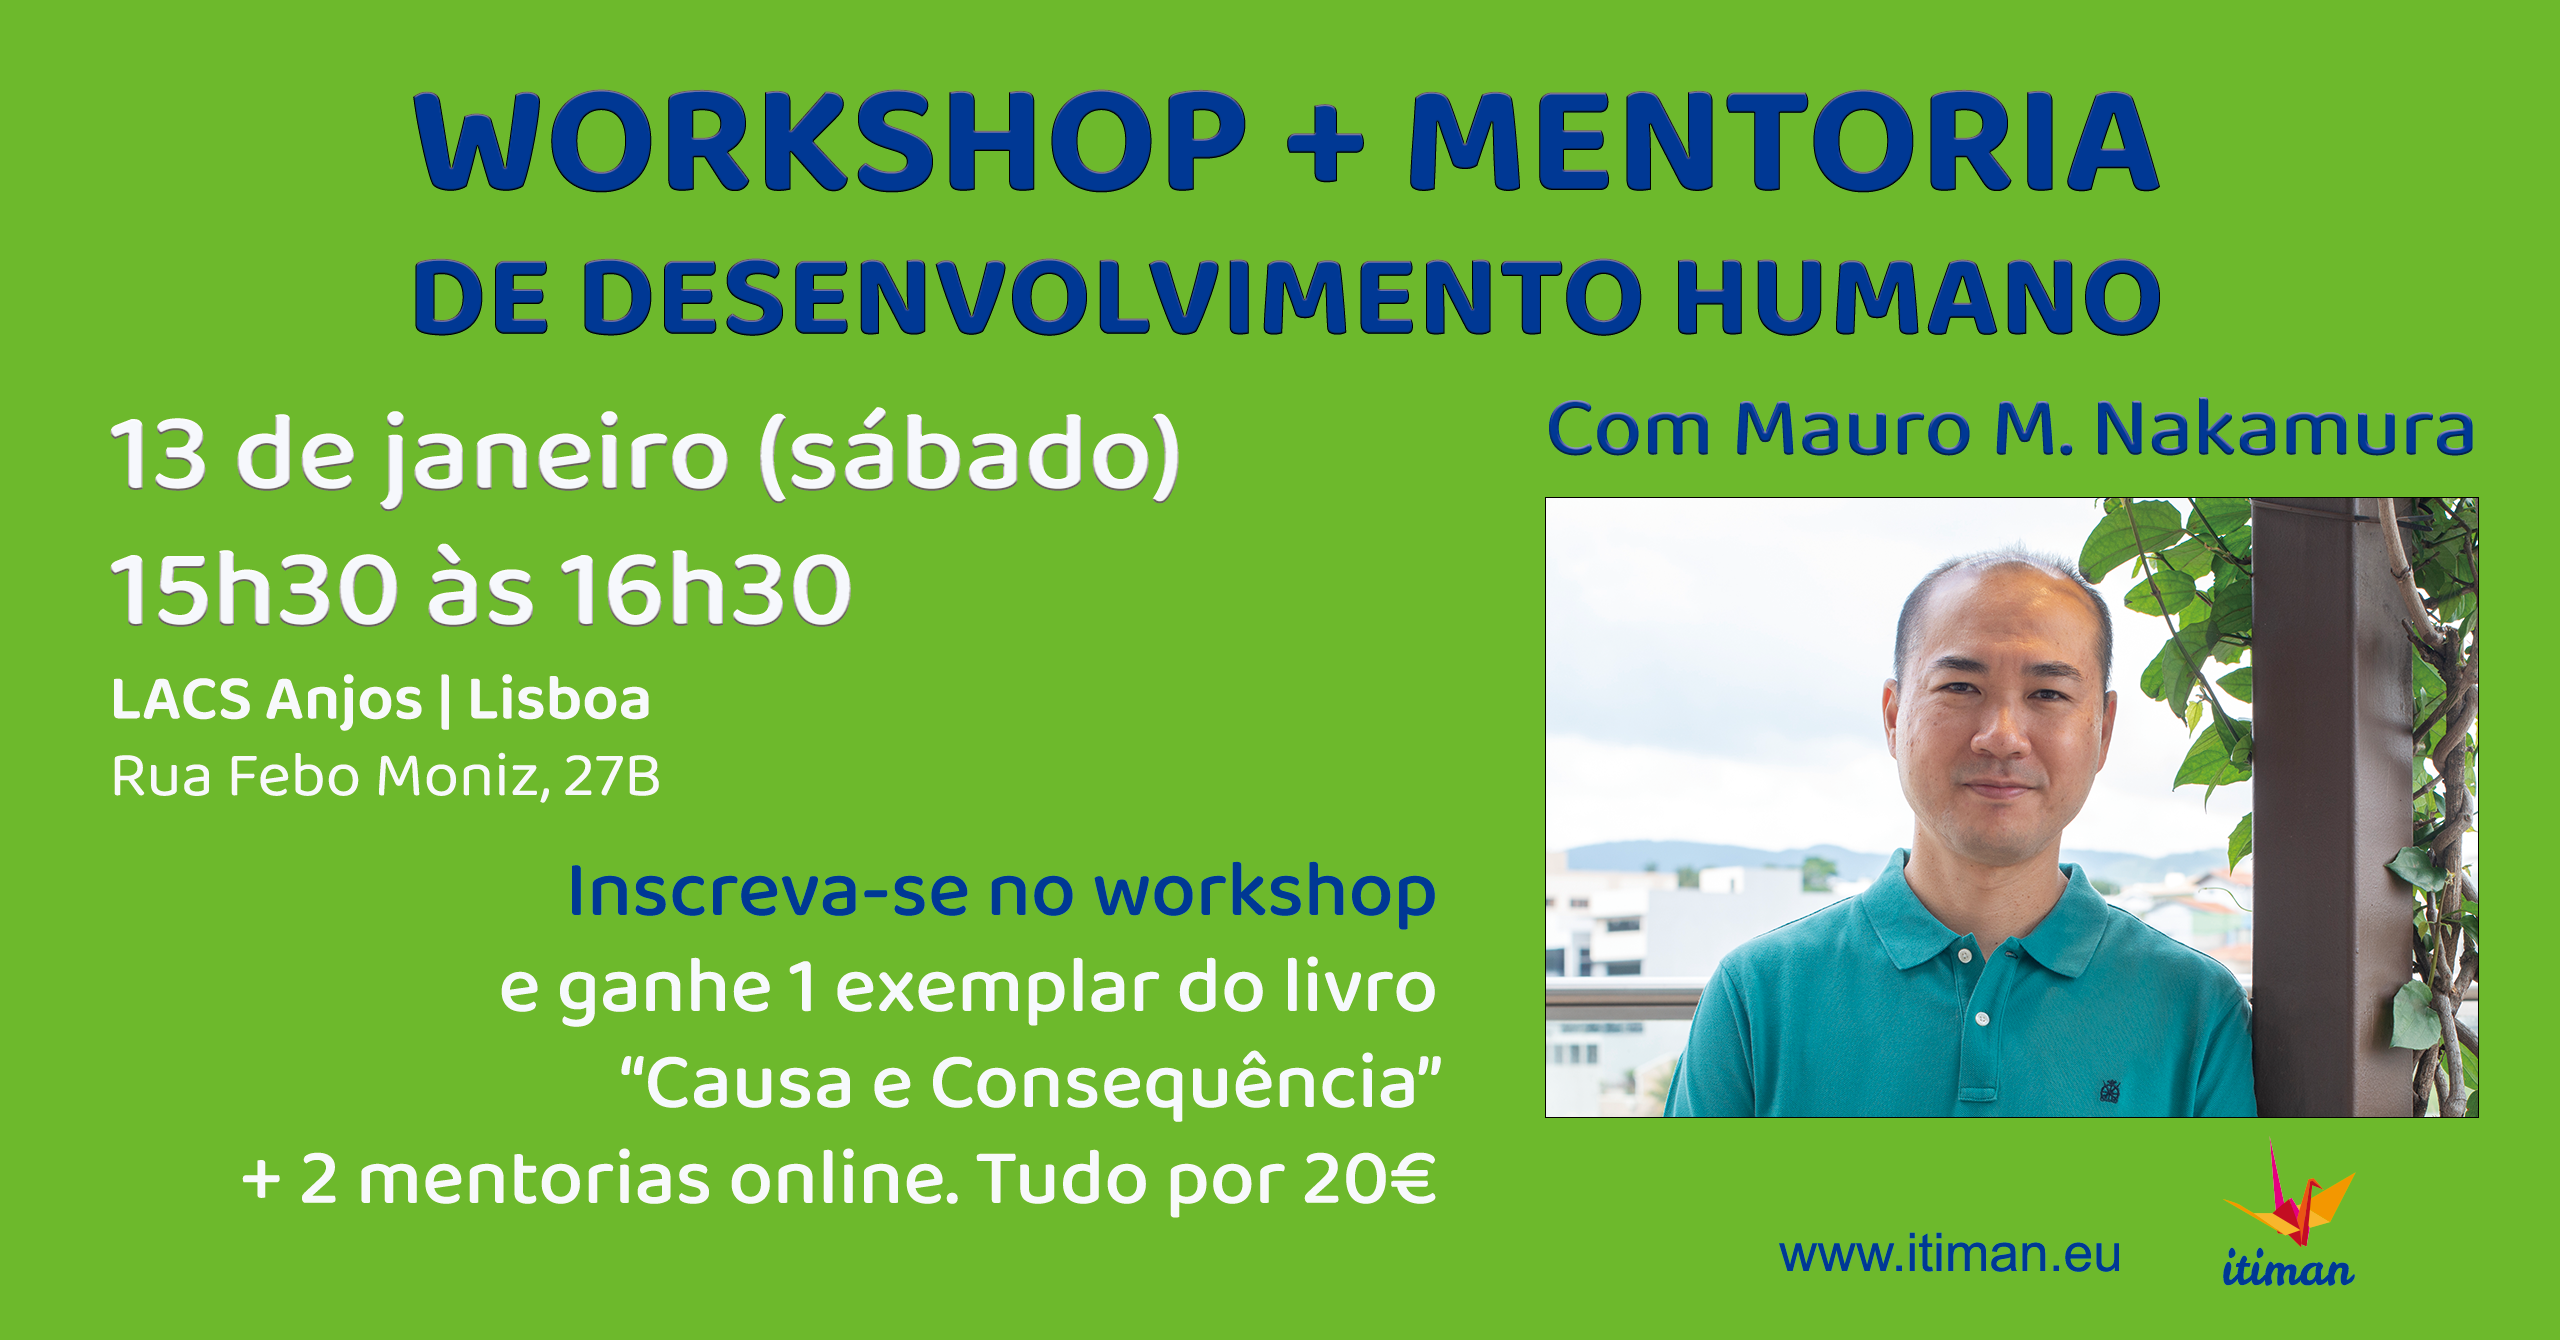 WORKSHOP + MENTORIA DE DESENVOLVIMENTO HUMANO em Lisboa | Com Mauro M. Nakamura